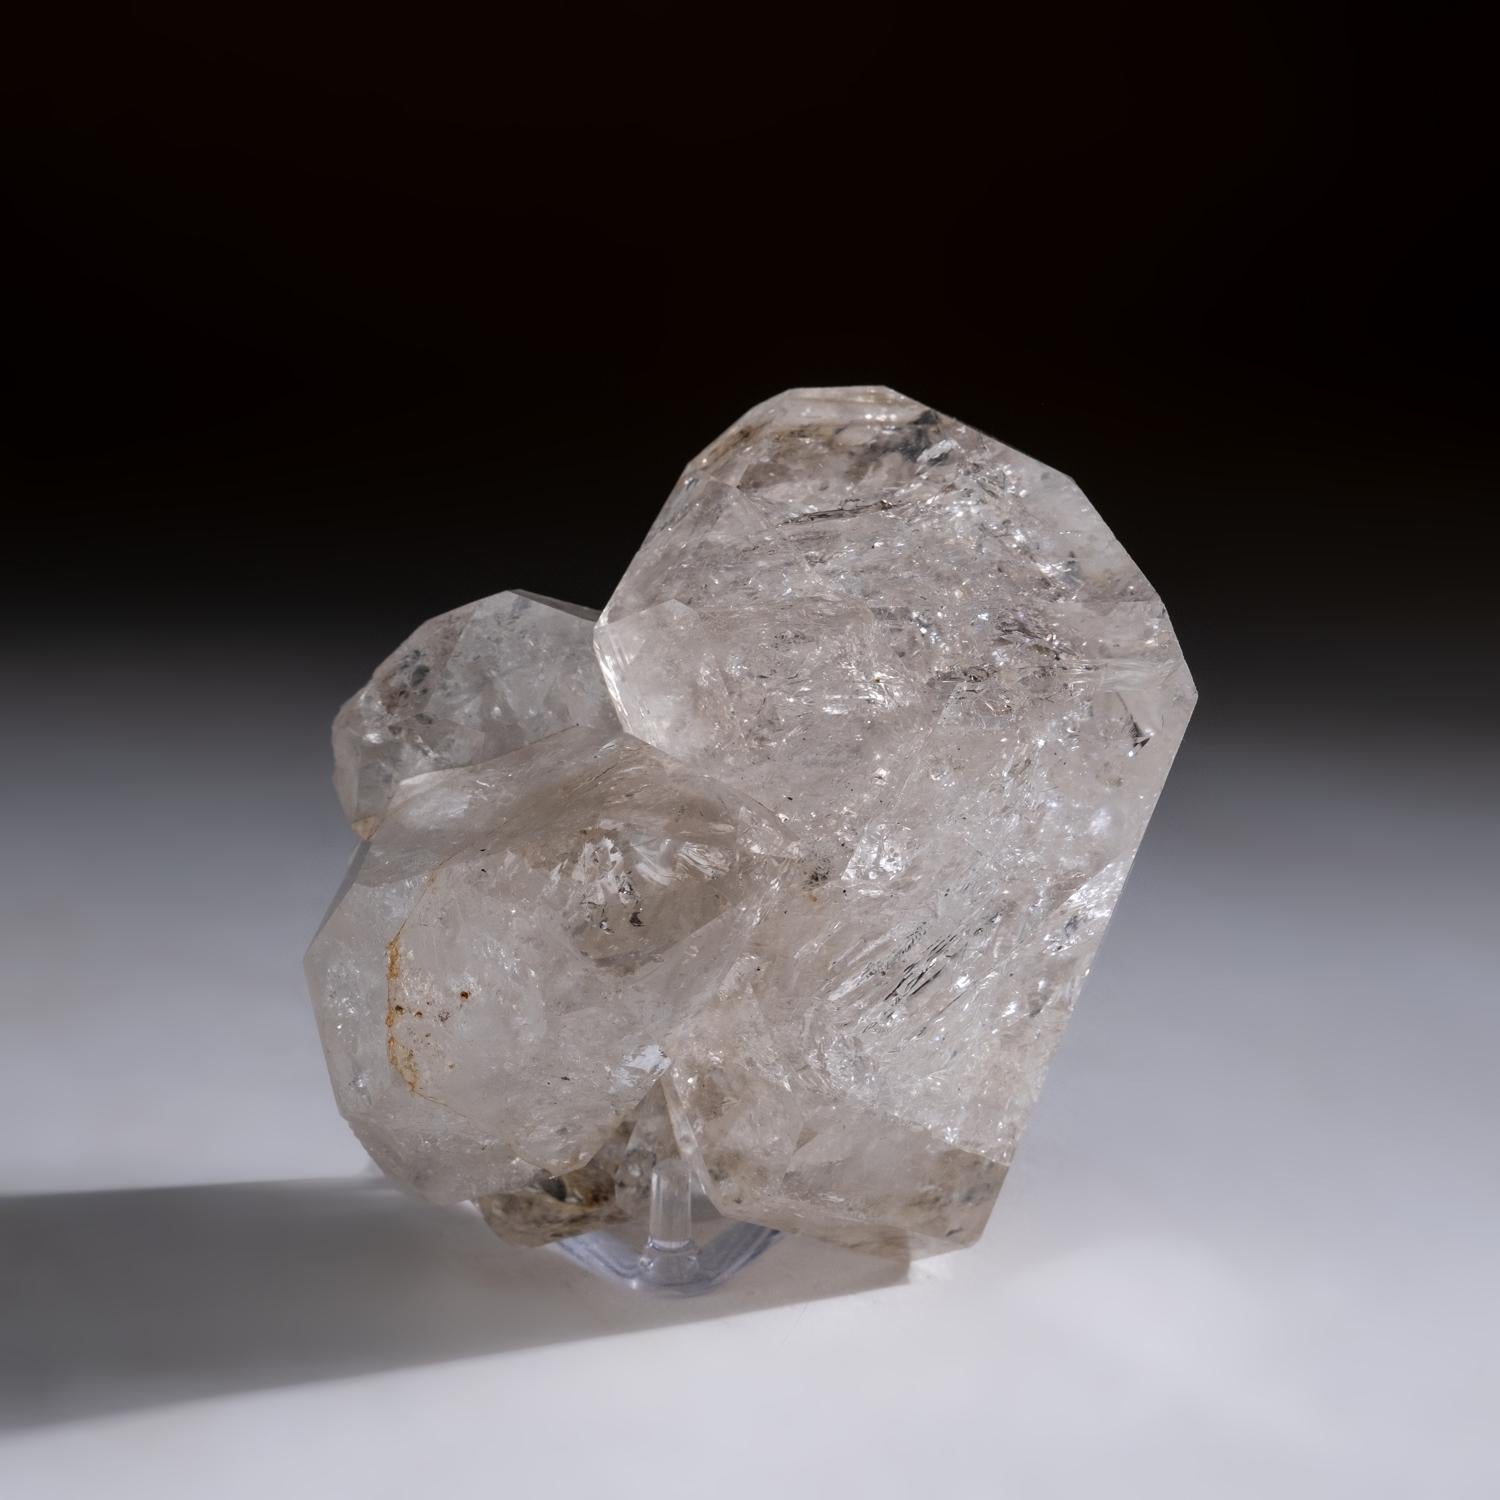 Amas de cristaux de quartz de Herkimer à double terminaison, empilés, provenant du comté de Herkimer, New York. Ce spécimen esthétique, translucide à transparent en forme de grappes de diamants de 3d, est en parfait état. Cette pièce présente une